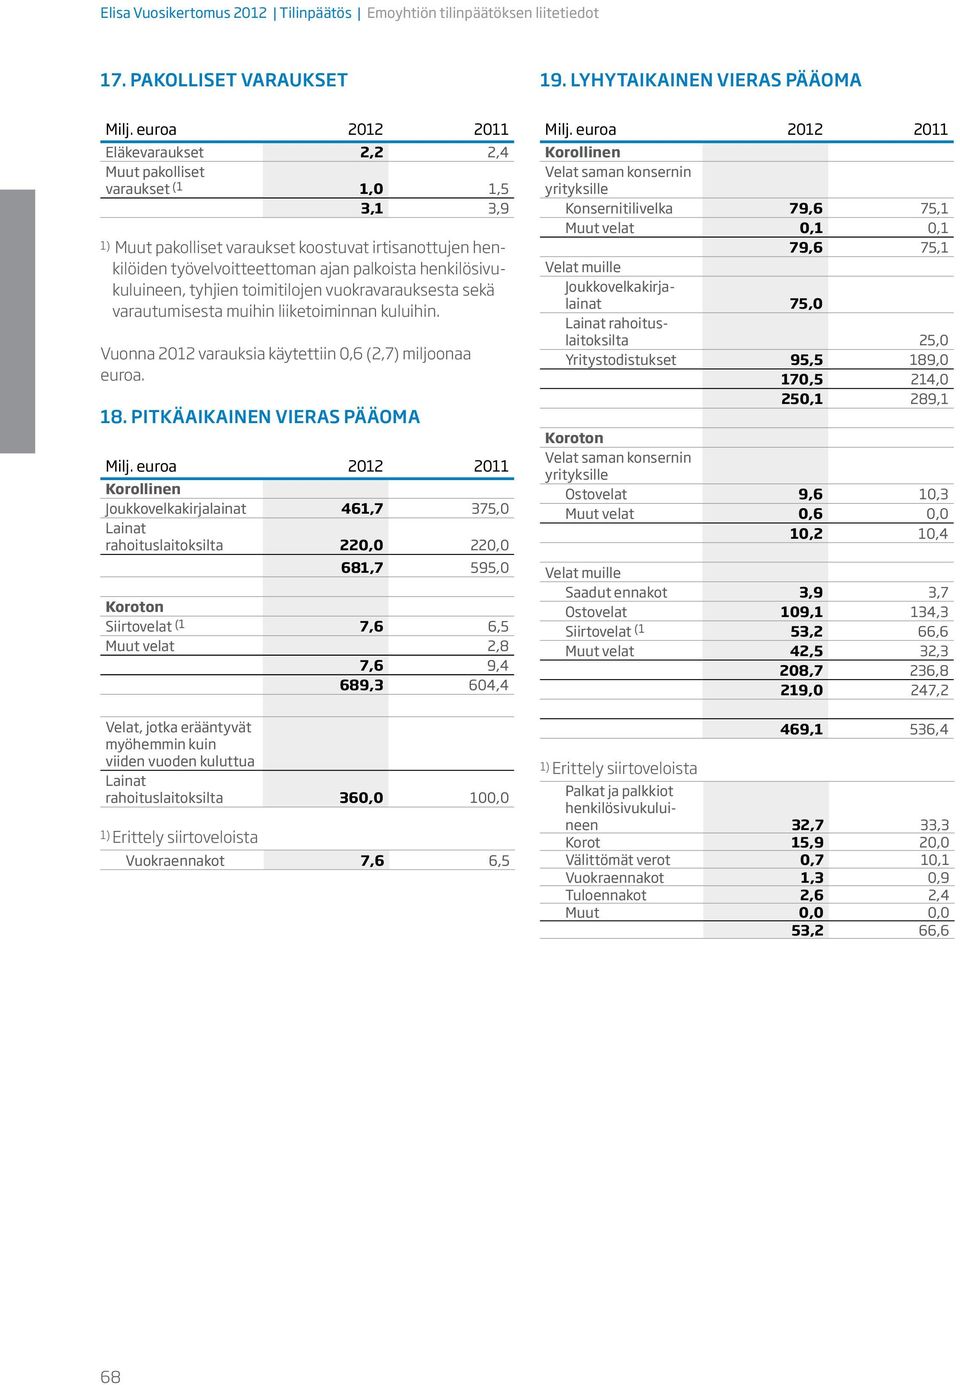 henkilösivukuluineen, tyhjien toimitilojen vuokravarauksesta sekä varautumisesta muihin liiketoiminnan kuluihin. Vuonna 2012 varauksia käytettiin 0,6 (2,7) miljoonaa euroa. 18.